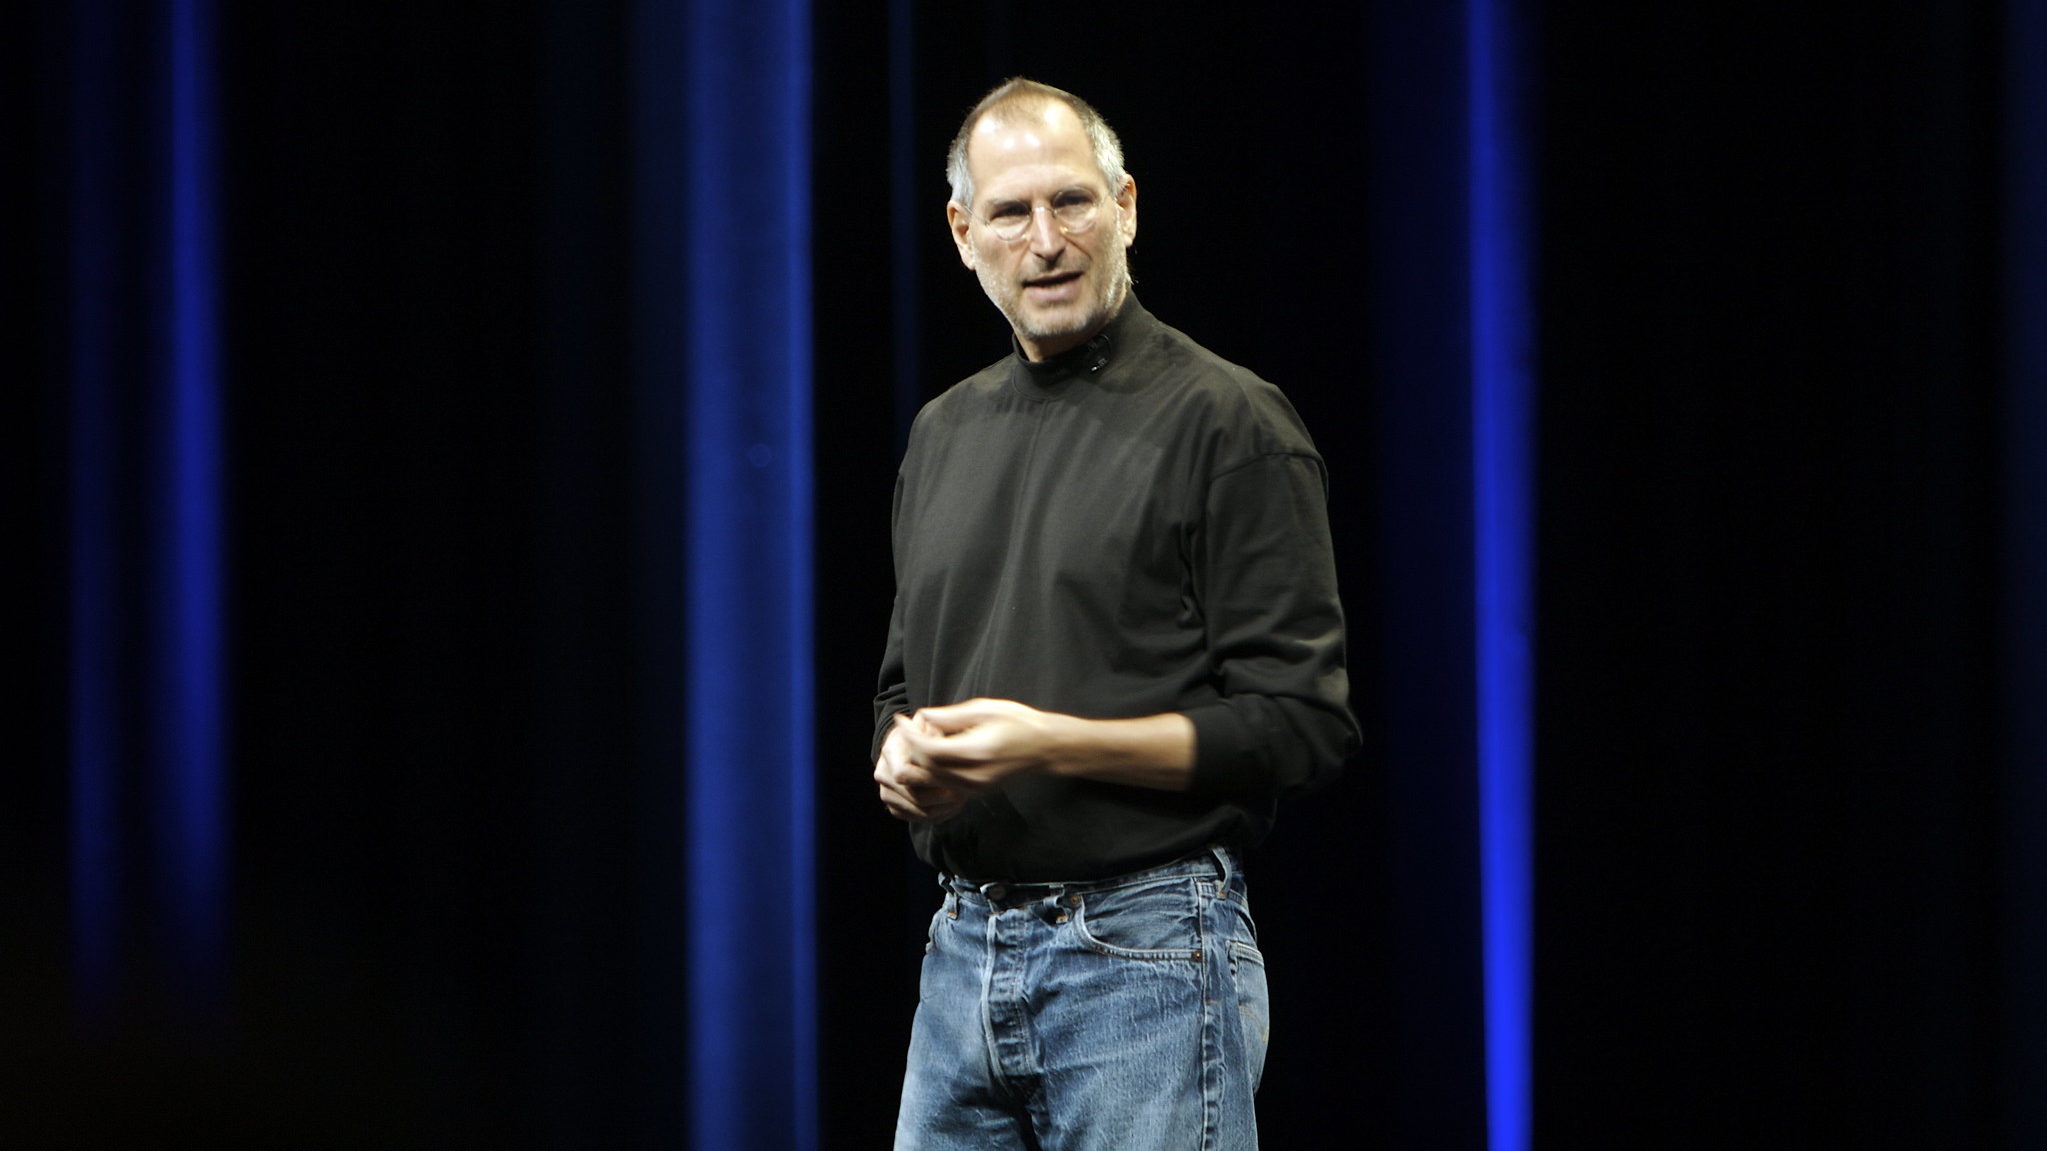 Carta de Steve Jobs com primeira candidatura de emprego é leiloada como NFT | Finanças